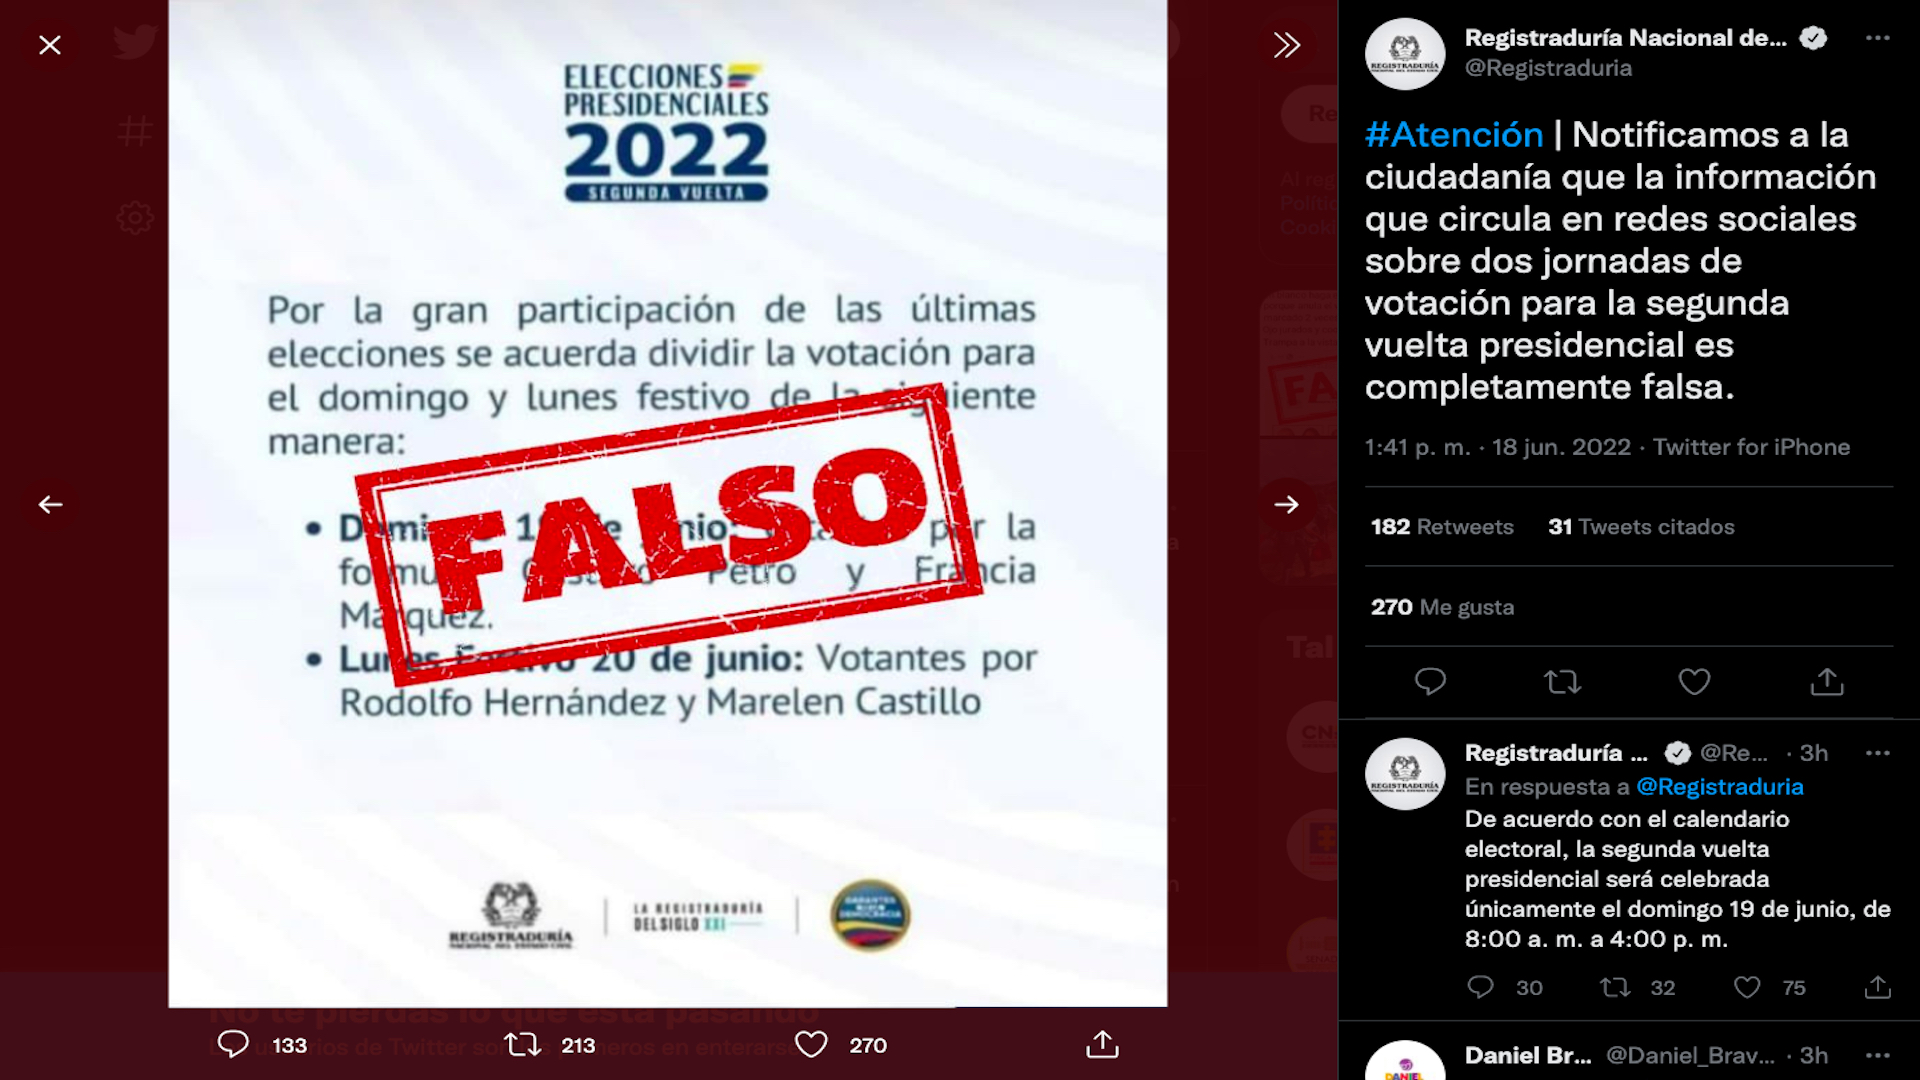 Información falsa sobre las fechas para votar en la segunda vuelta presidencial de Colombia 2022 - 2026 / (Twitter: @Registraduria)